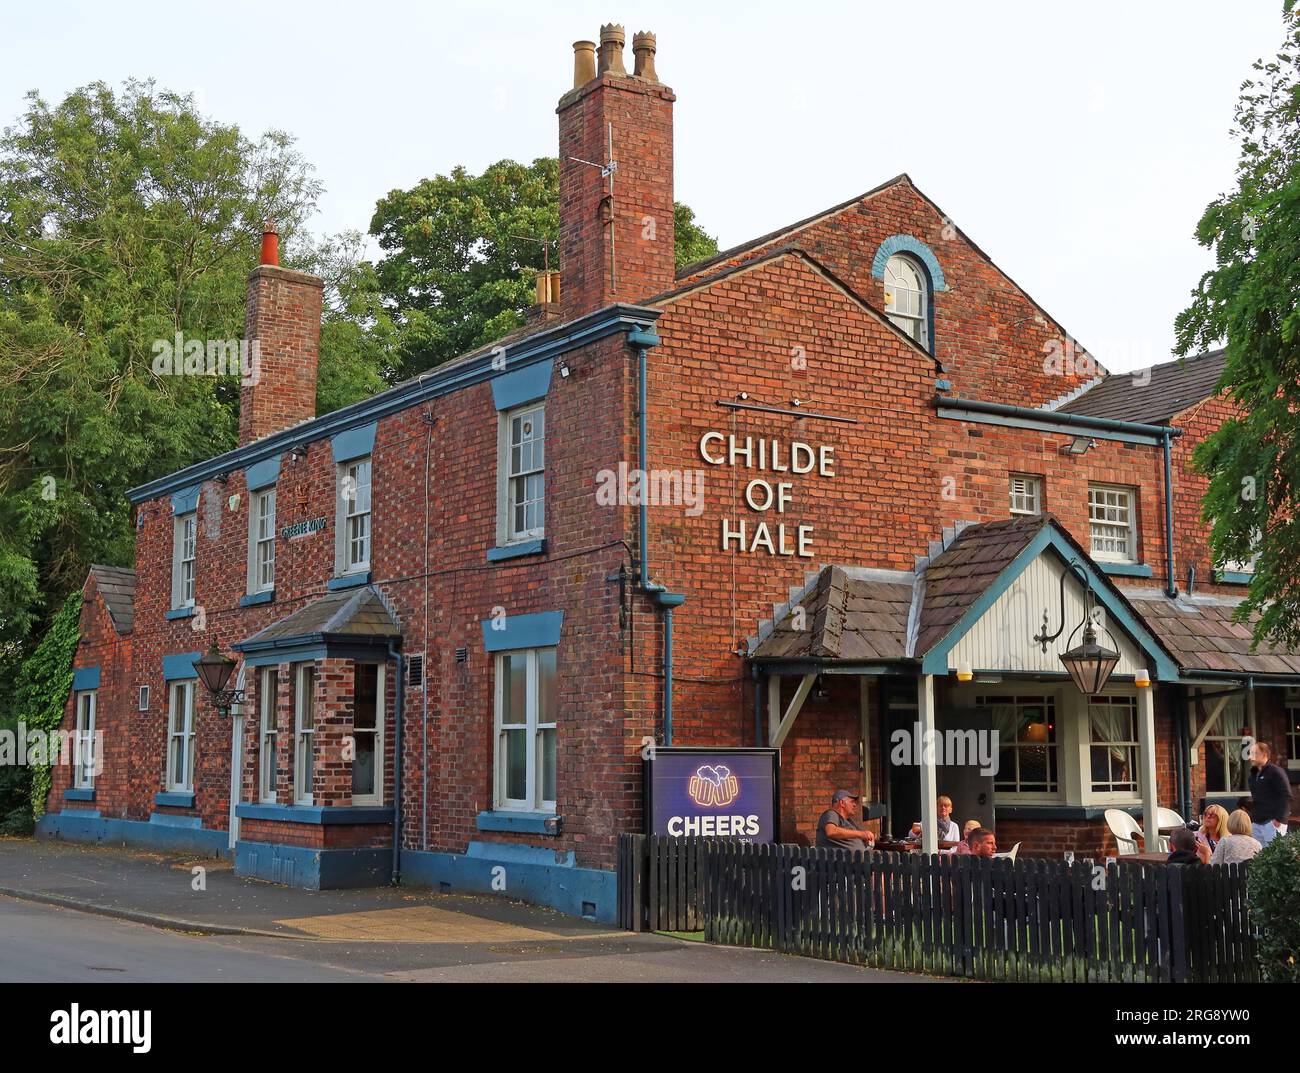 Le pub Childe of Hale nommé d'après un géant à neuf pieds, trois pouces de haut, Hale village, Halton, Merseyside, ANGLETERRE, ROYAUME-UNI, L24 4WB Banque D'Images